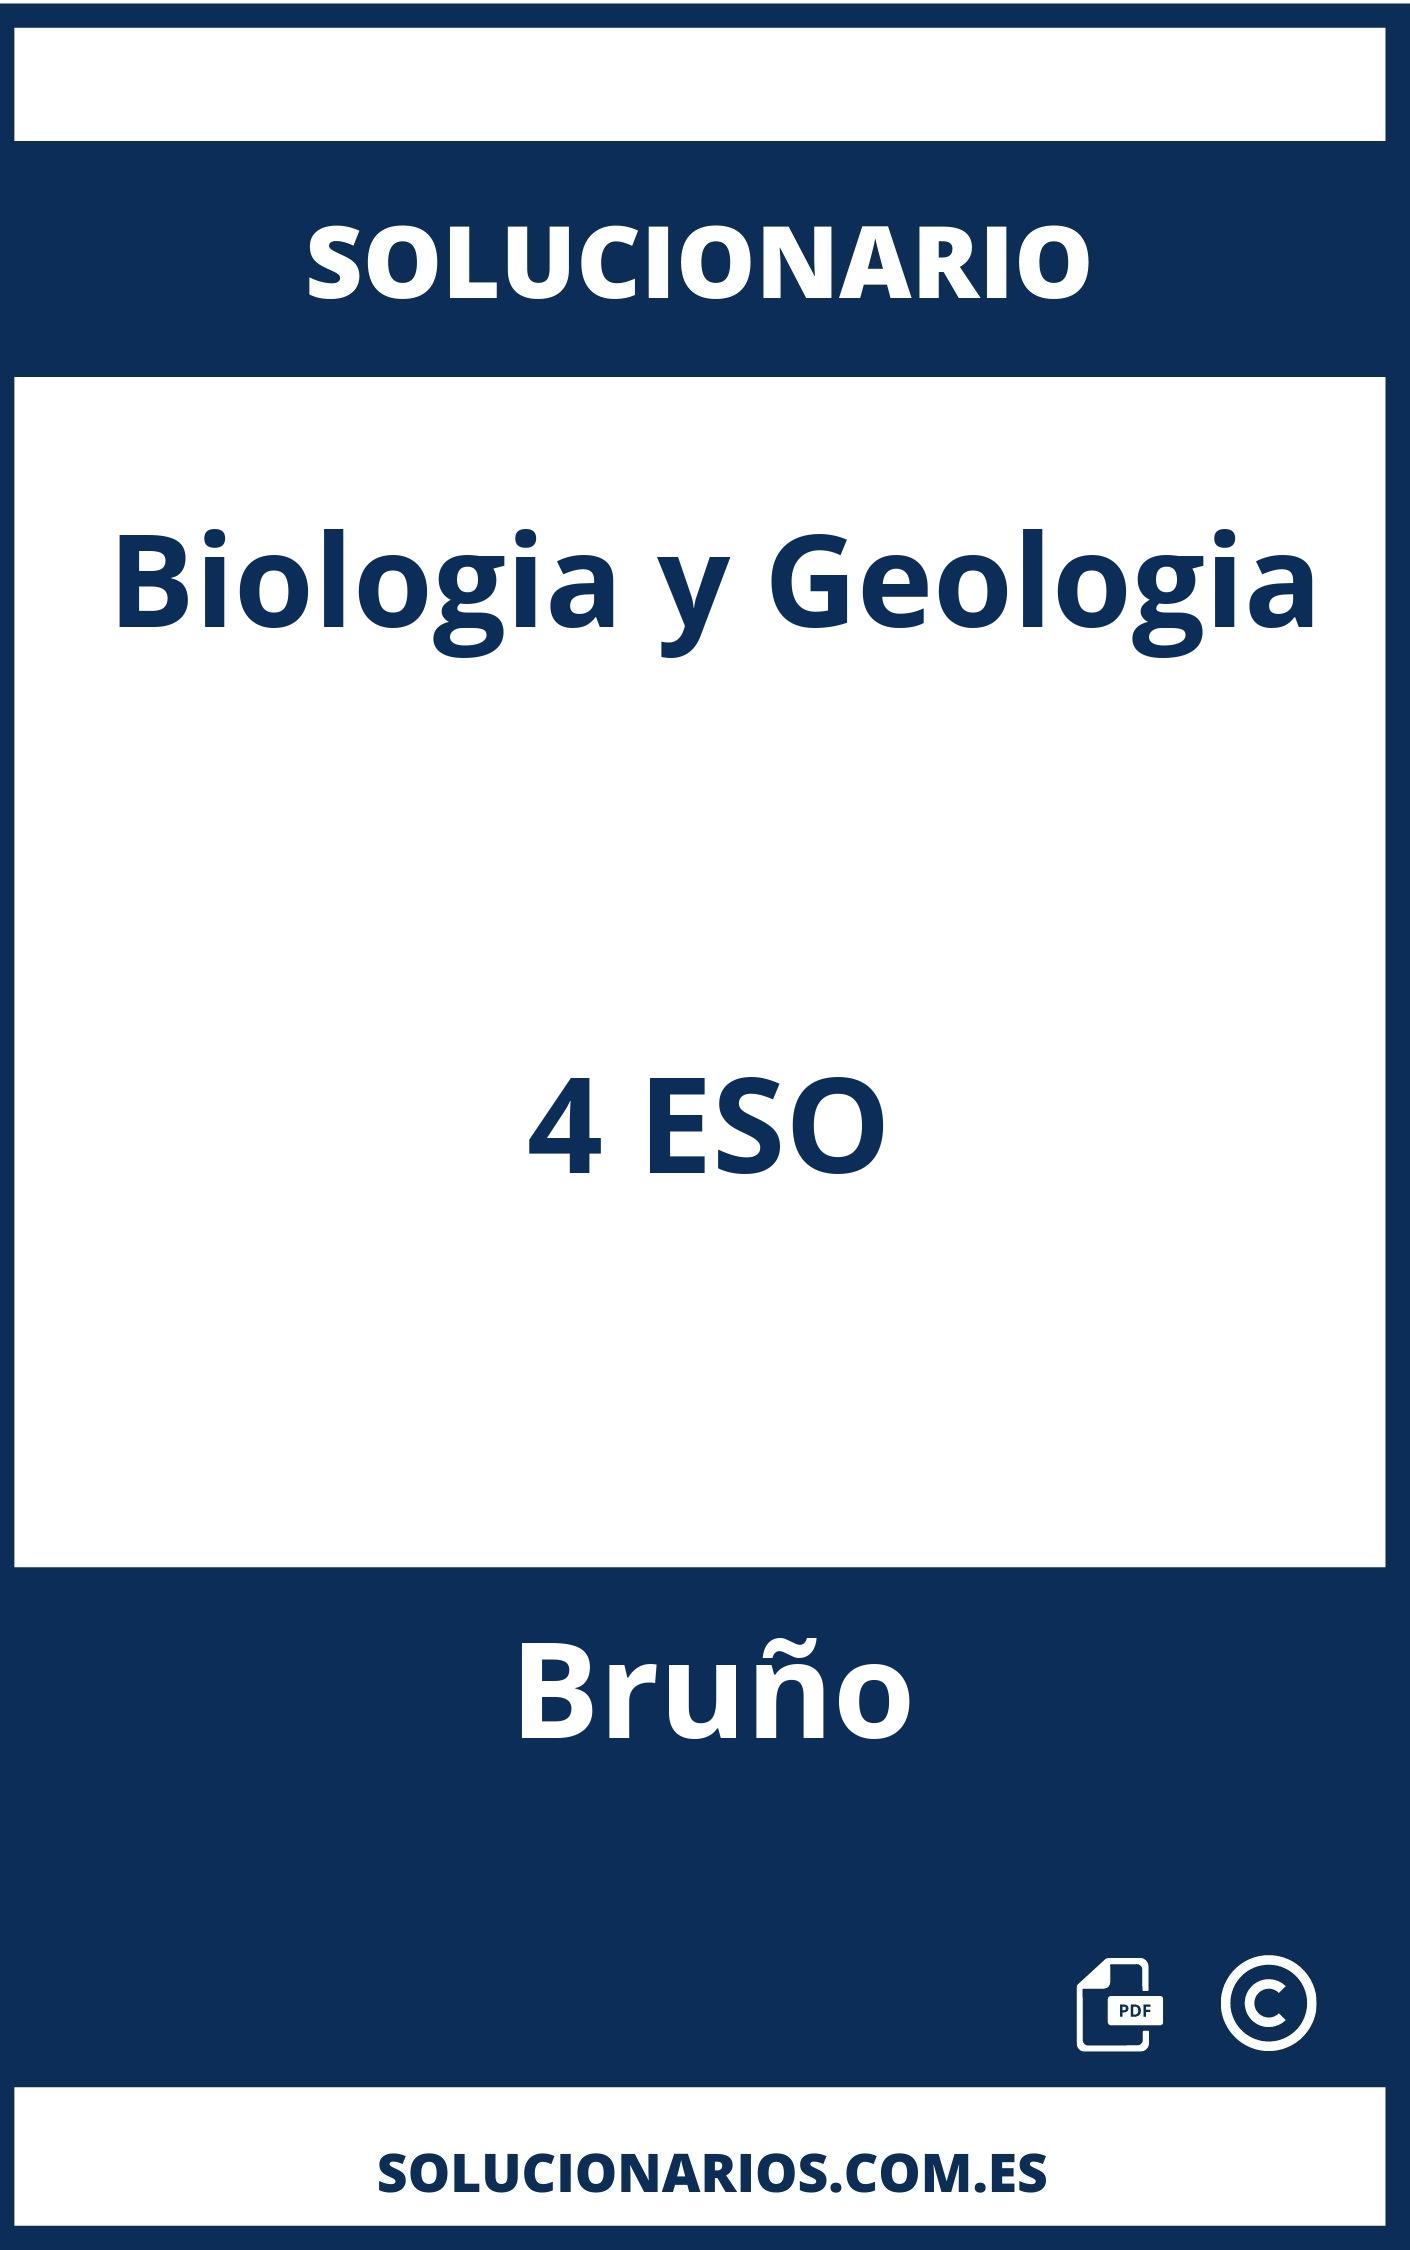 Solucionario Biologia y Geologia 4 ESO Bruño